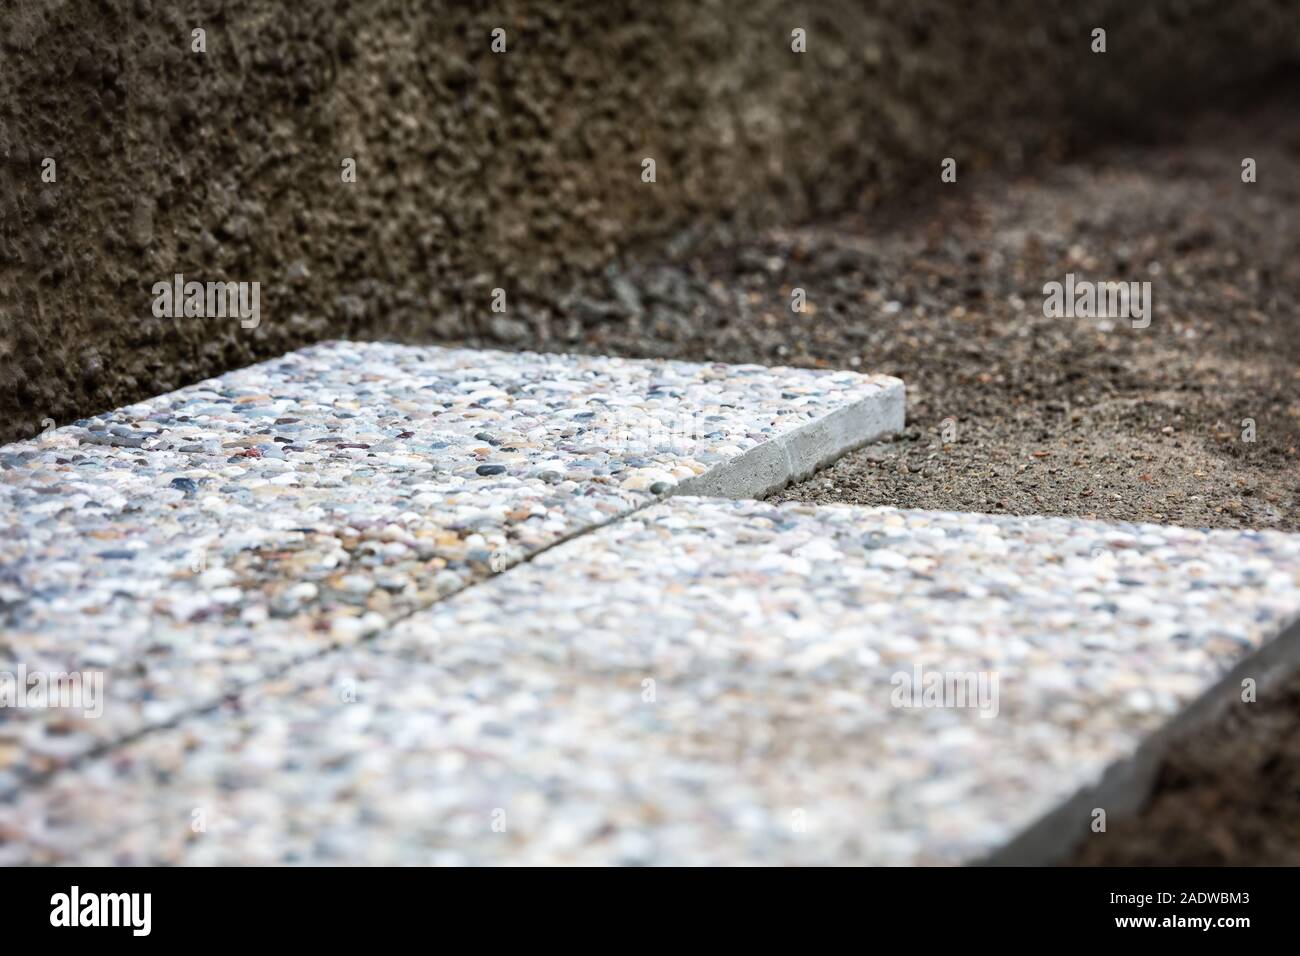 Fresca di cui lavato le lastre di cemento nell'area esterna, solette nel letto di ghiaia Foto Stock